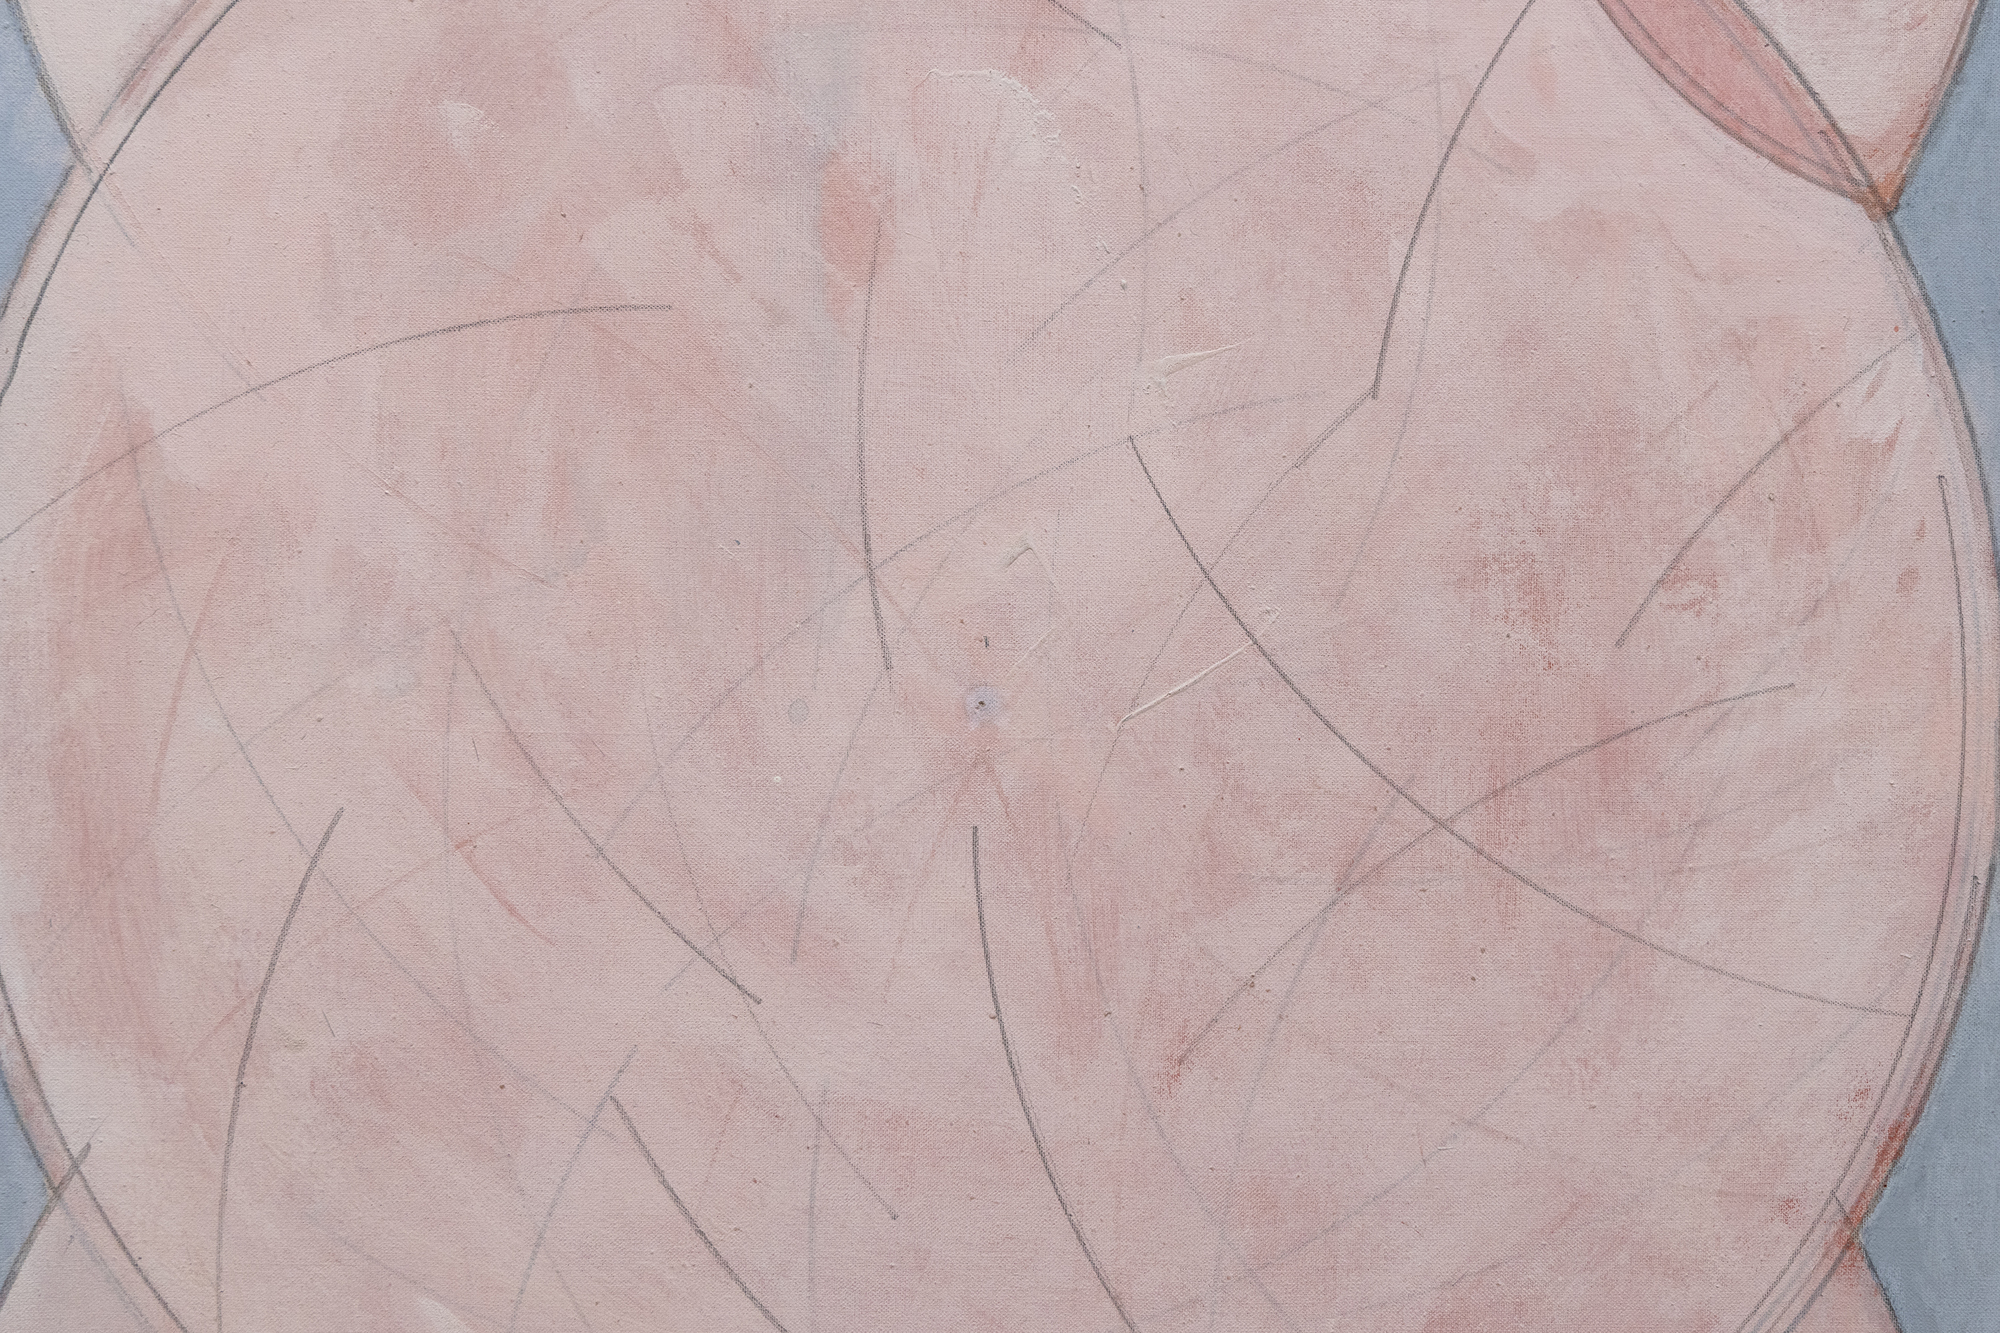 هاسل سميث - مقلة العين إلى مقلة العين - النفط على قماش - 46 × 46 في.